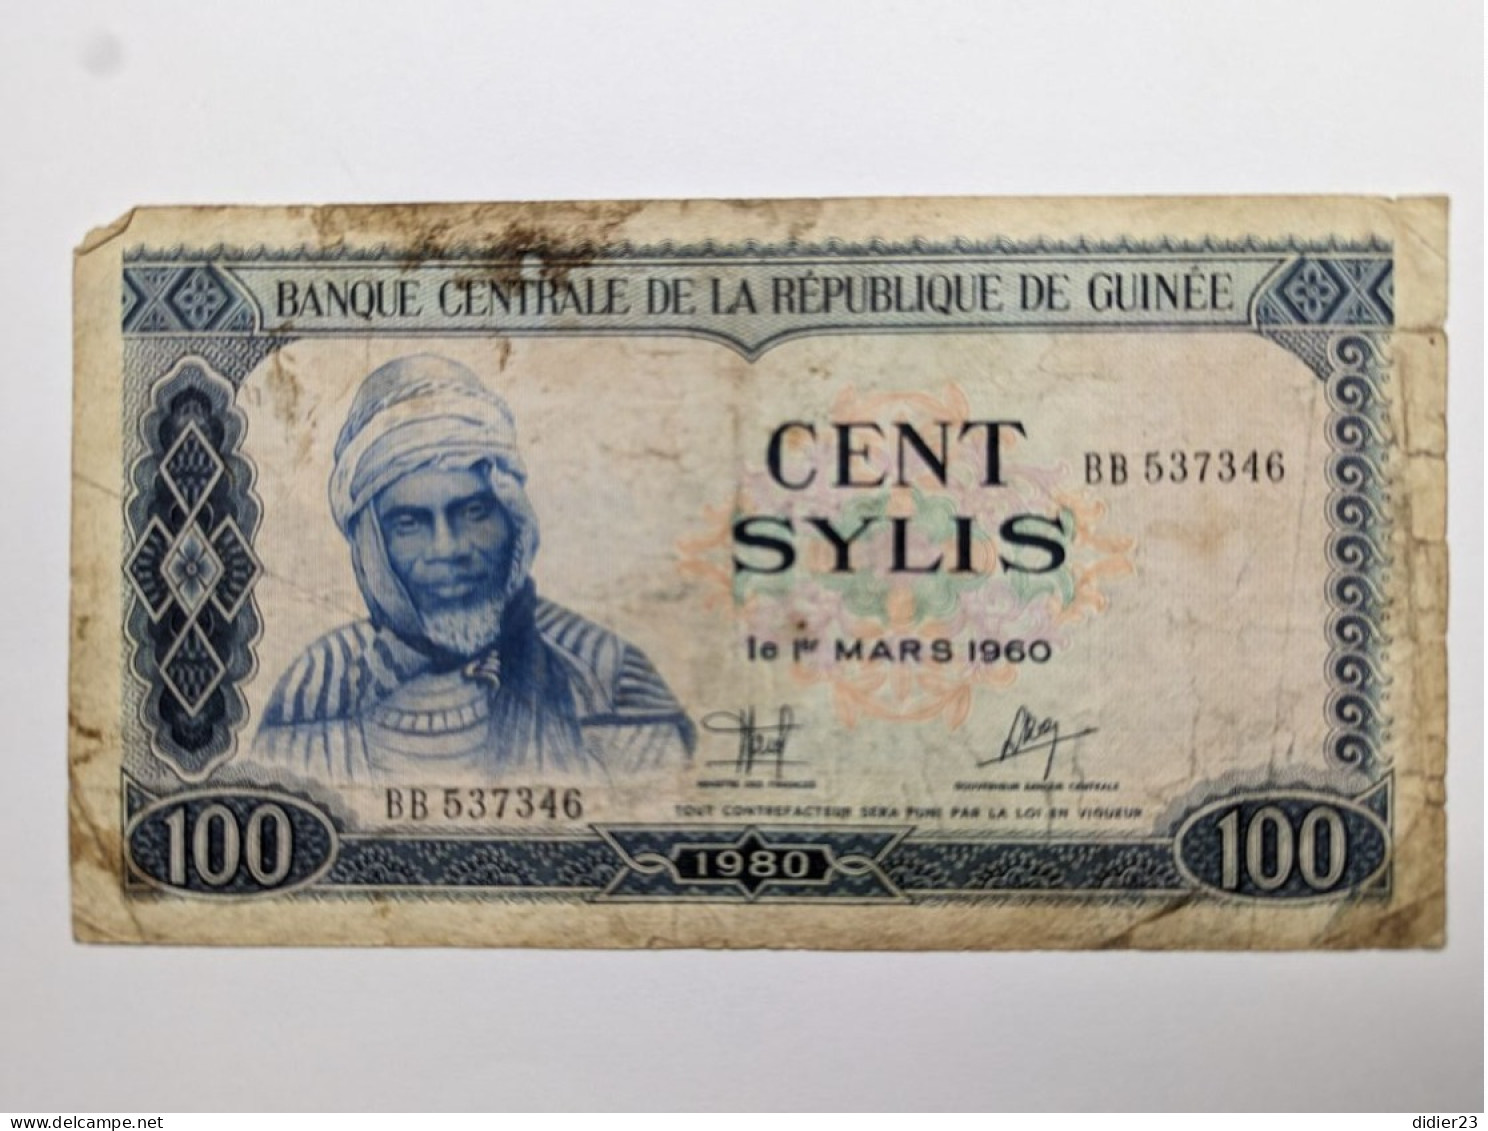 BILLET DE BANQUE GUINEE 100 SYLIS 1960 - Guinée